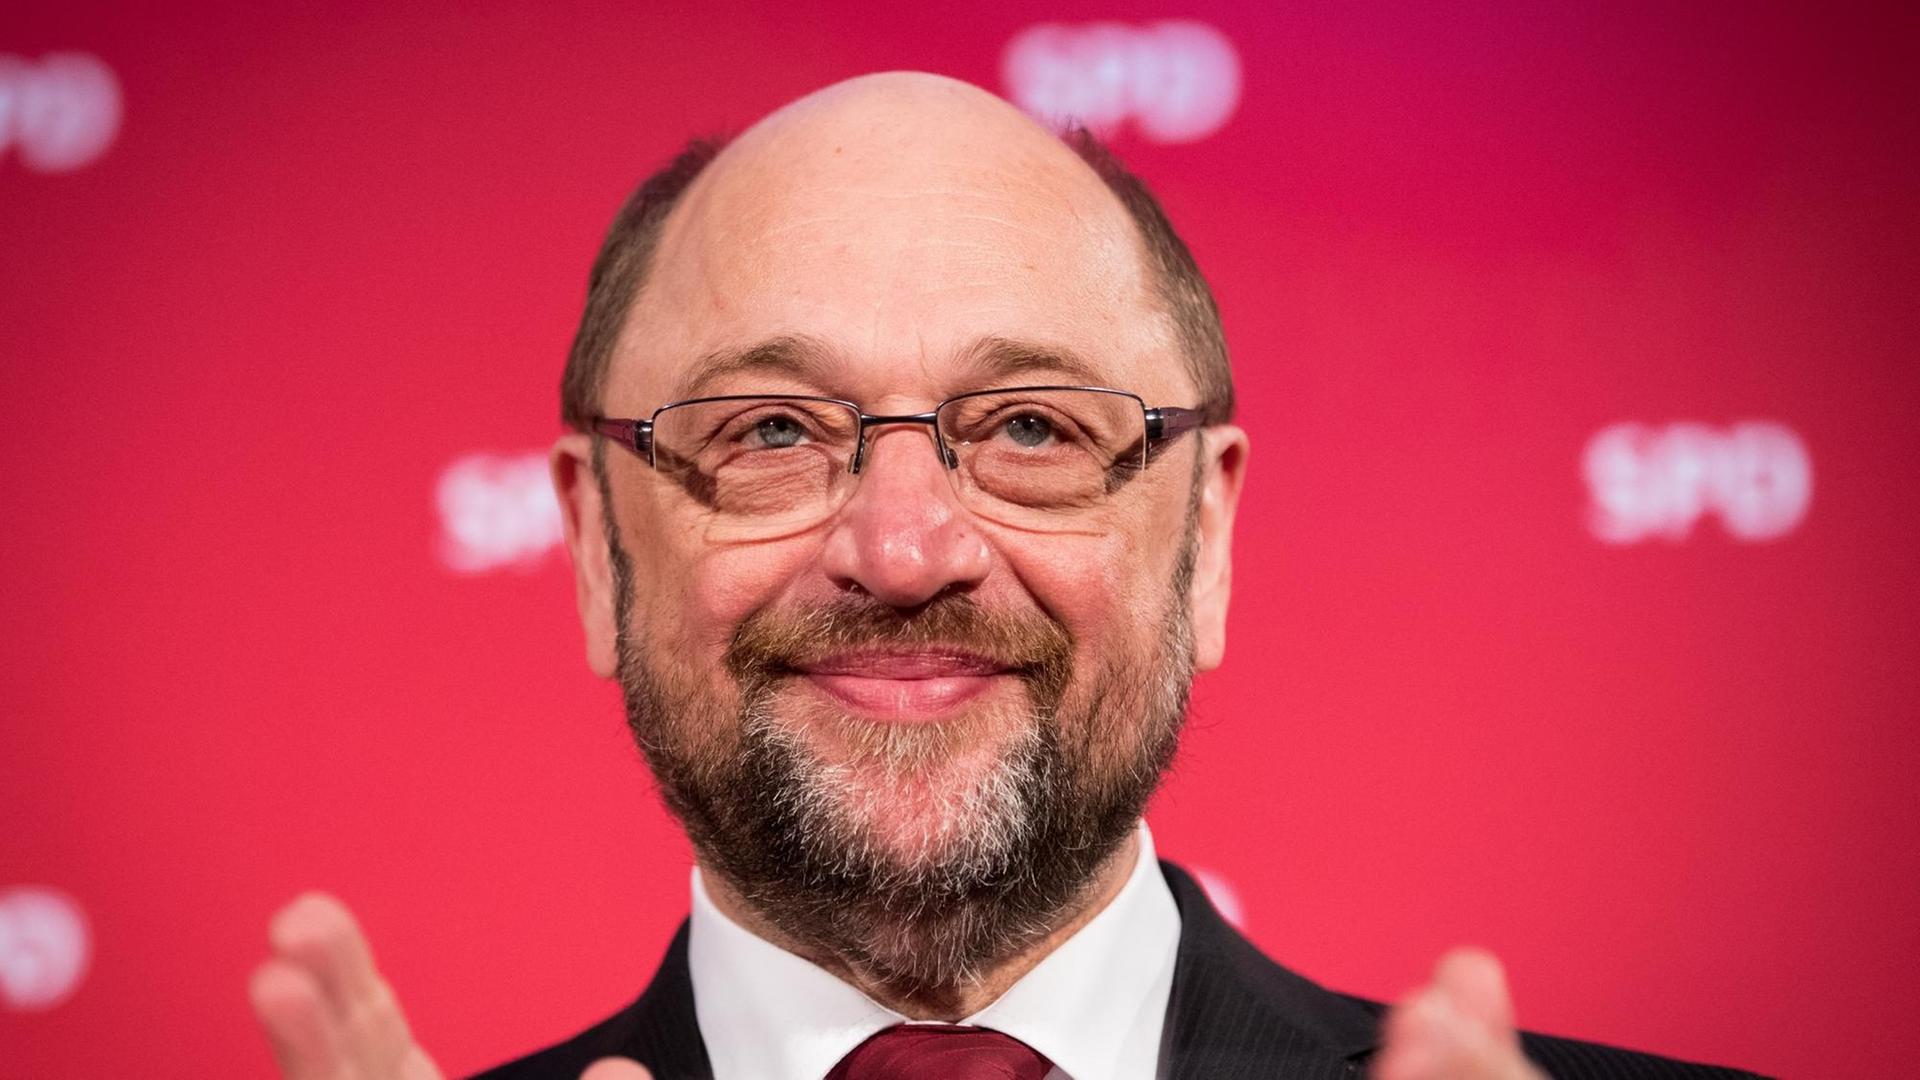 Der SPD-Kanzlerkandidat Martin Schulz lächelnd vor einer Wand mit SPD-Logos.